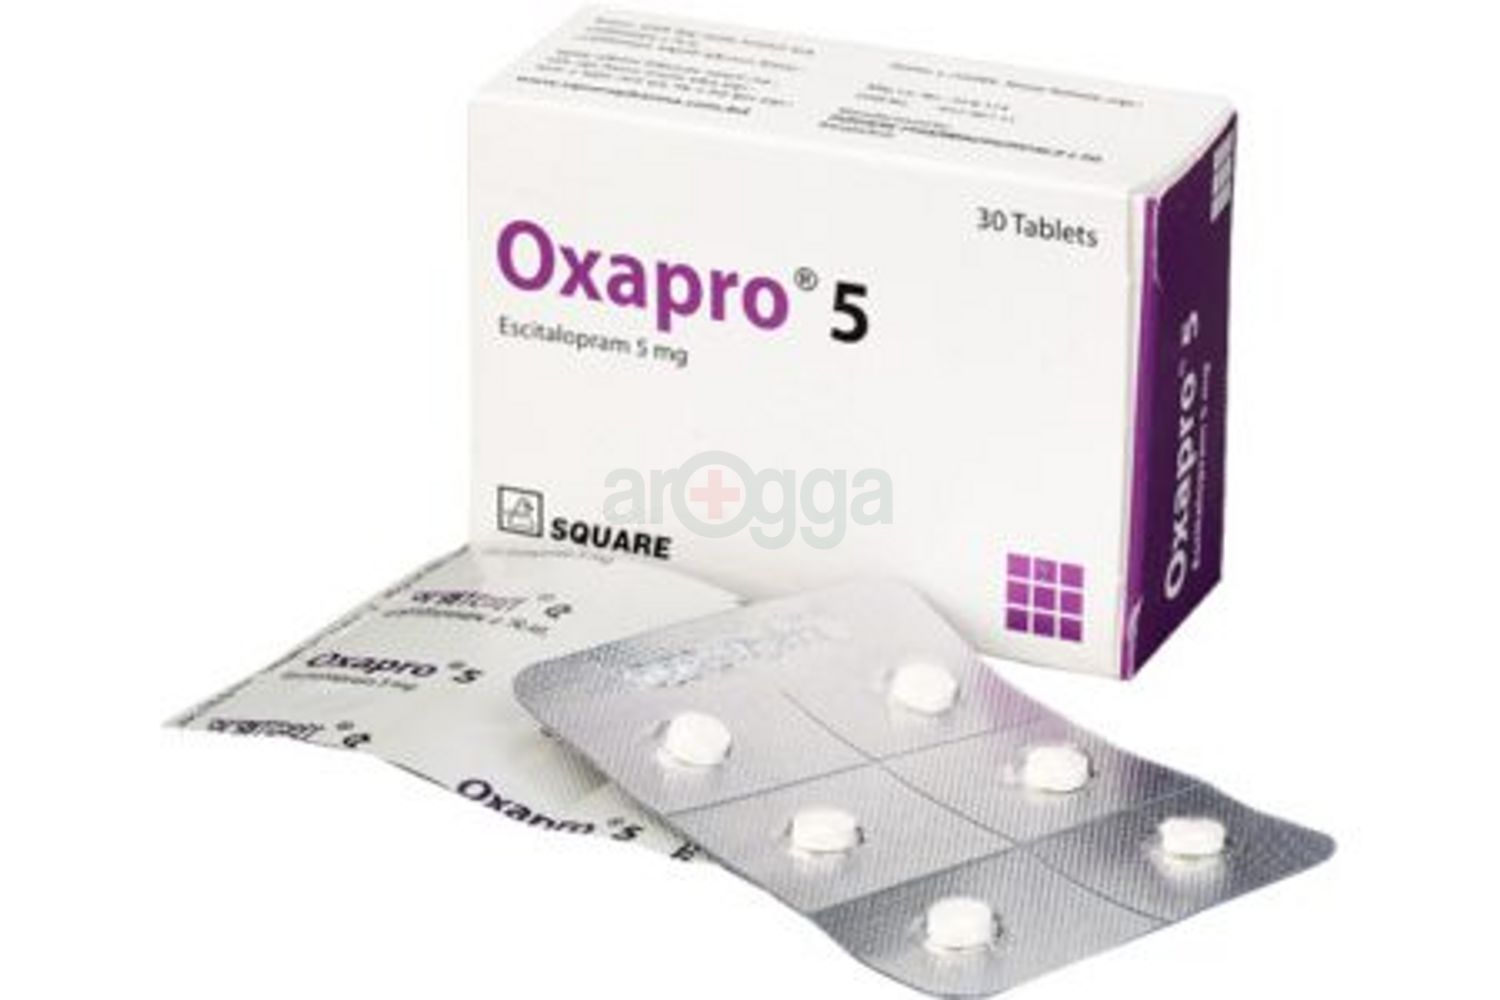 Oxapro 5